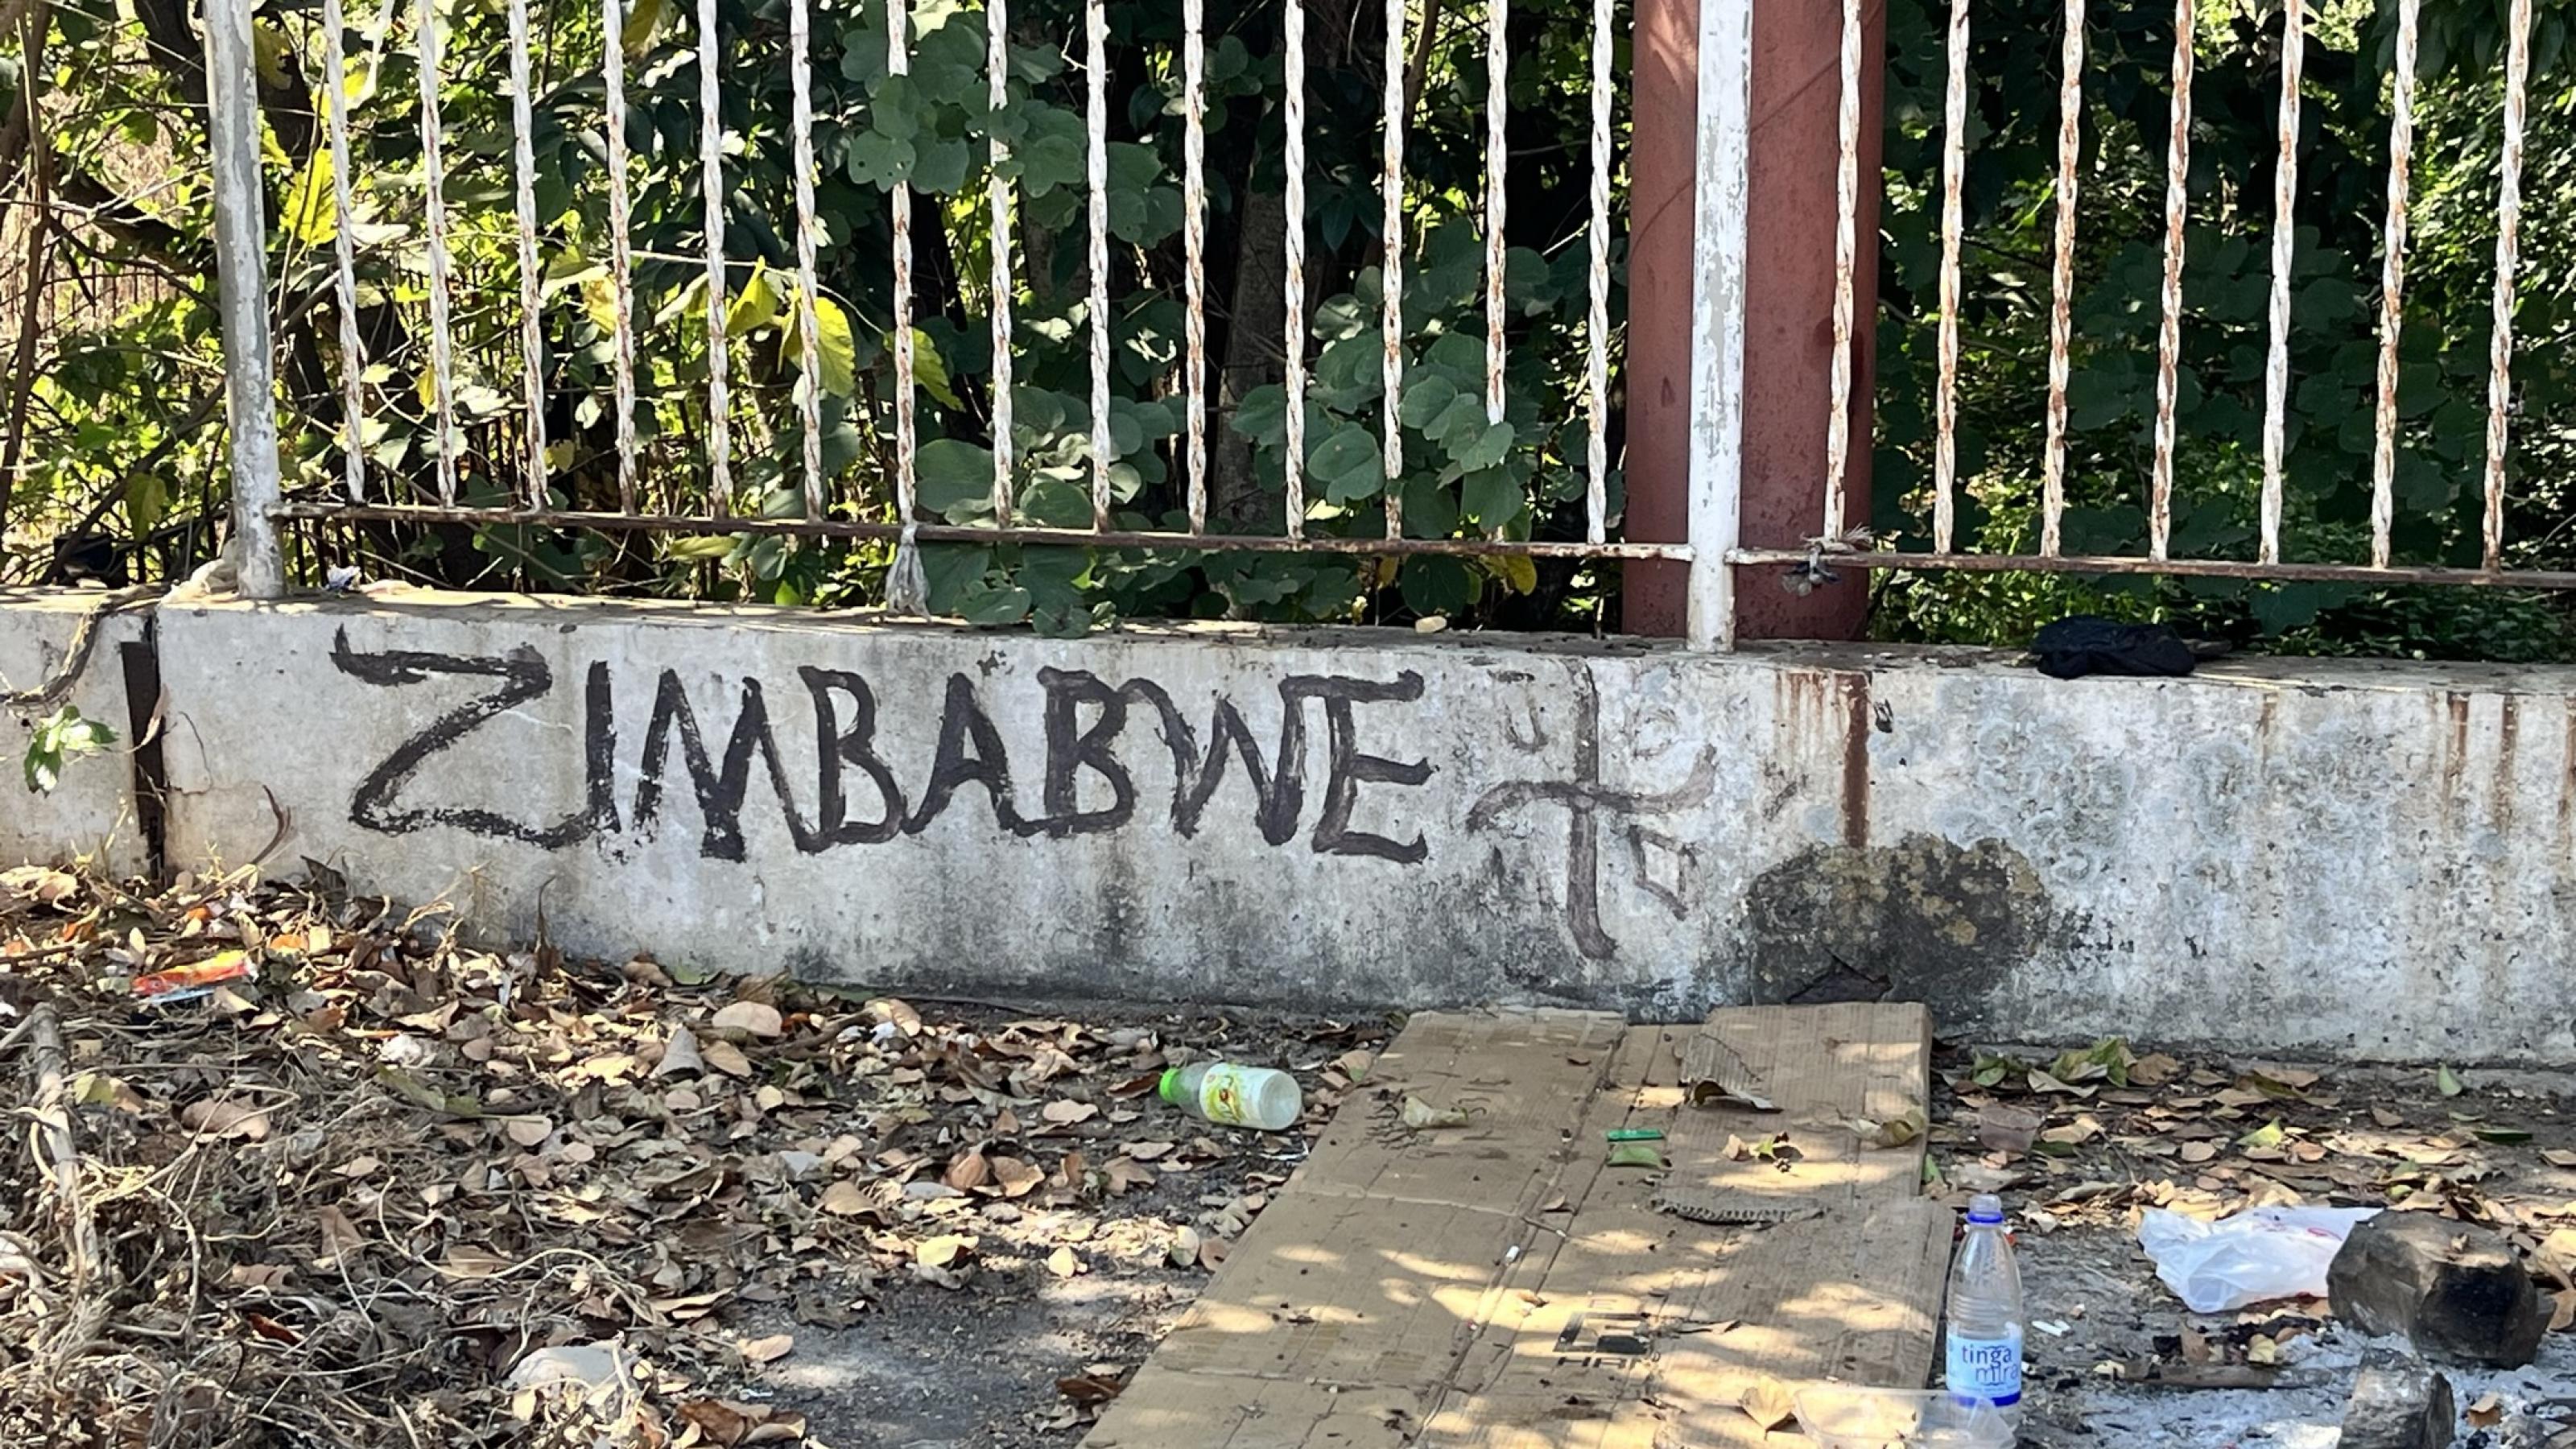 Auf eine Mauer hat jemand Zimbabwe geschrieben. Davor liegt Müll.